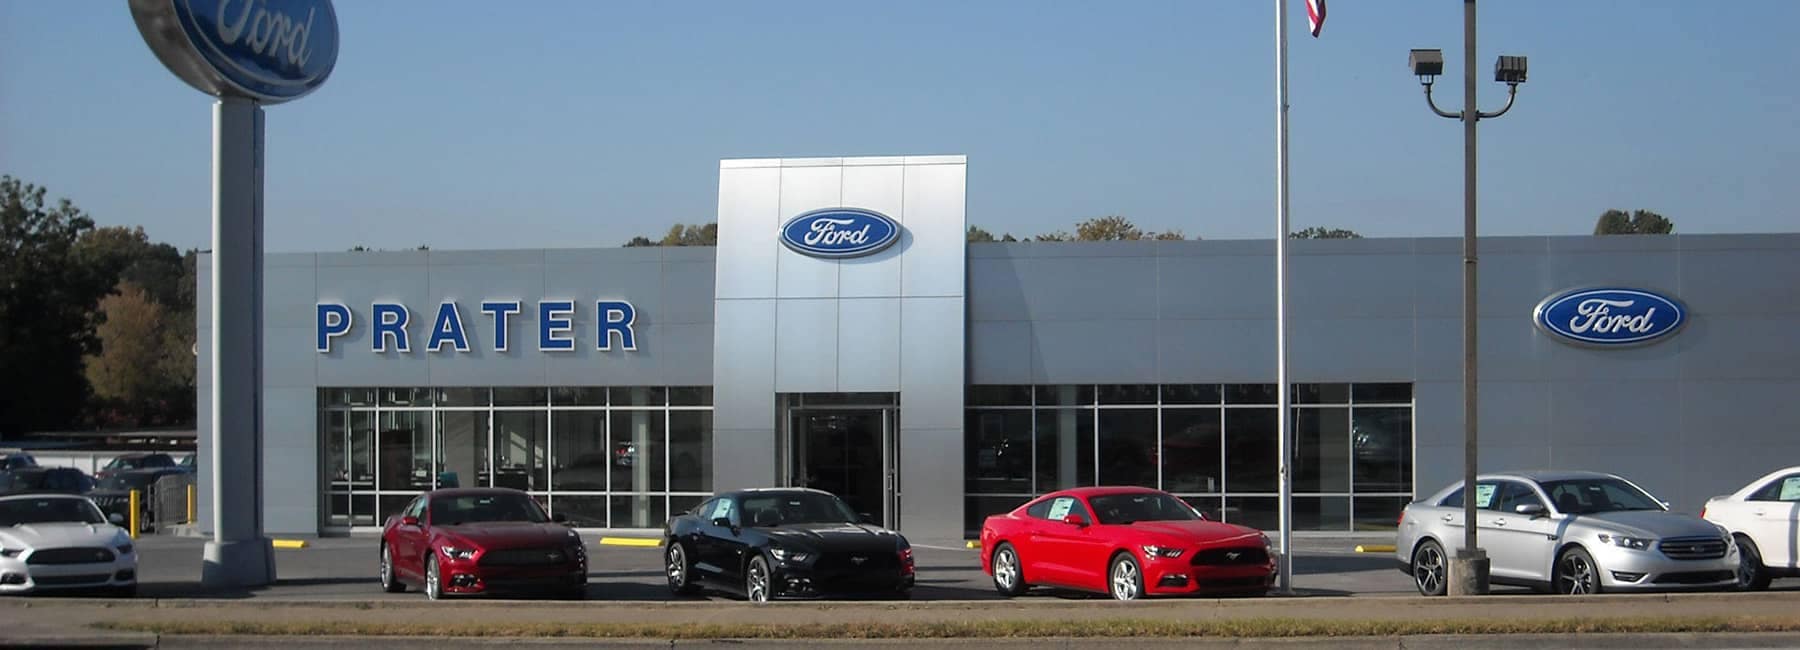 Prater Ford dealership